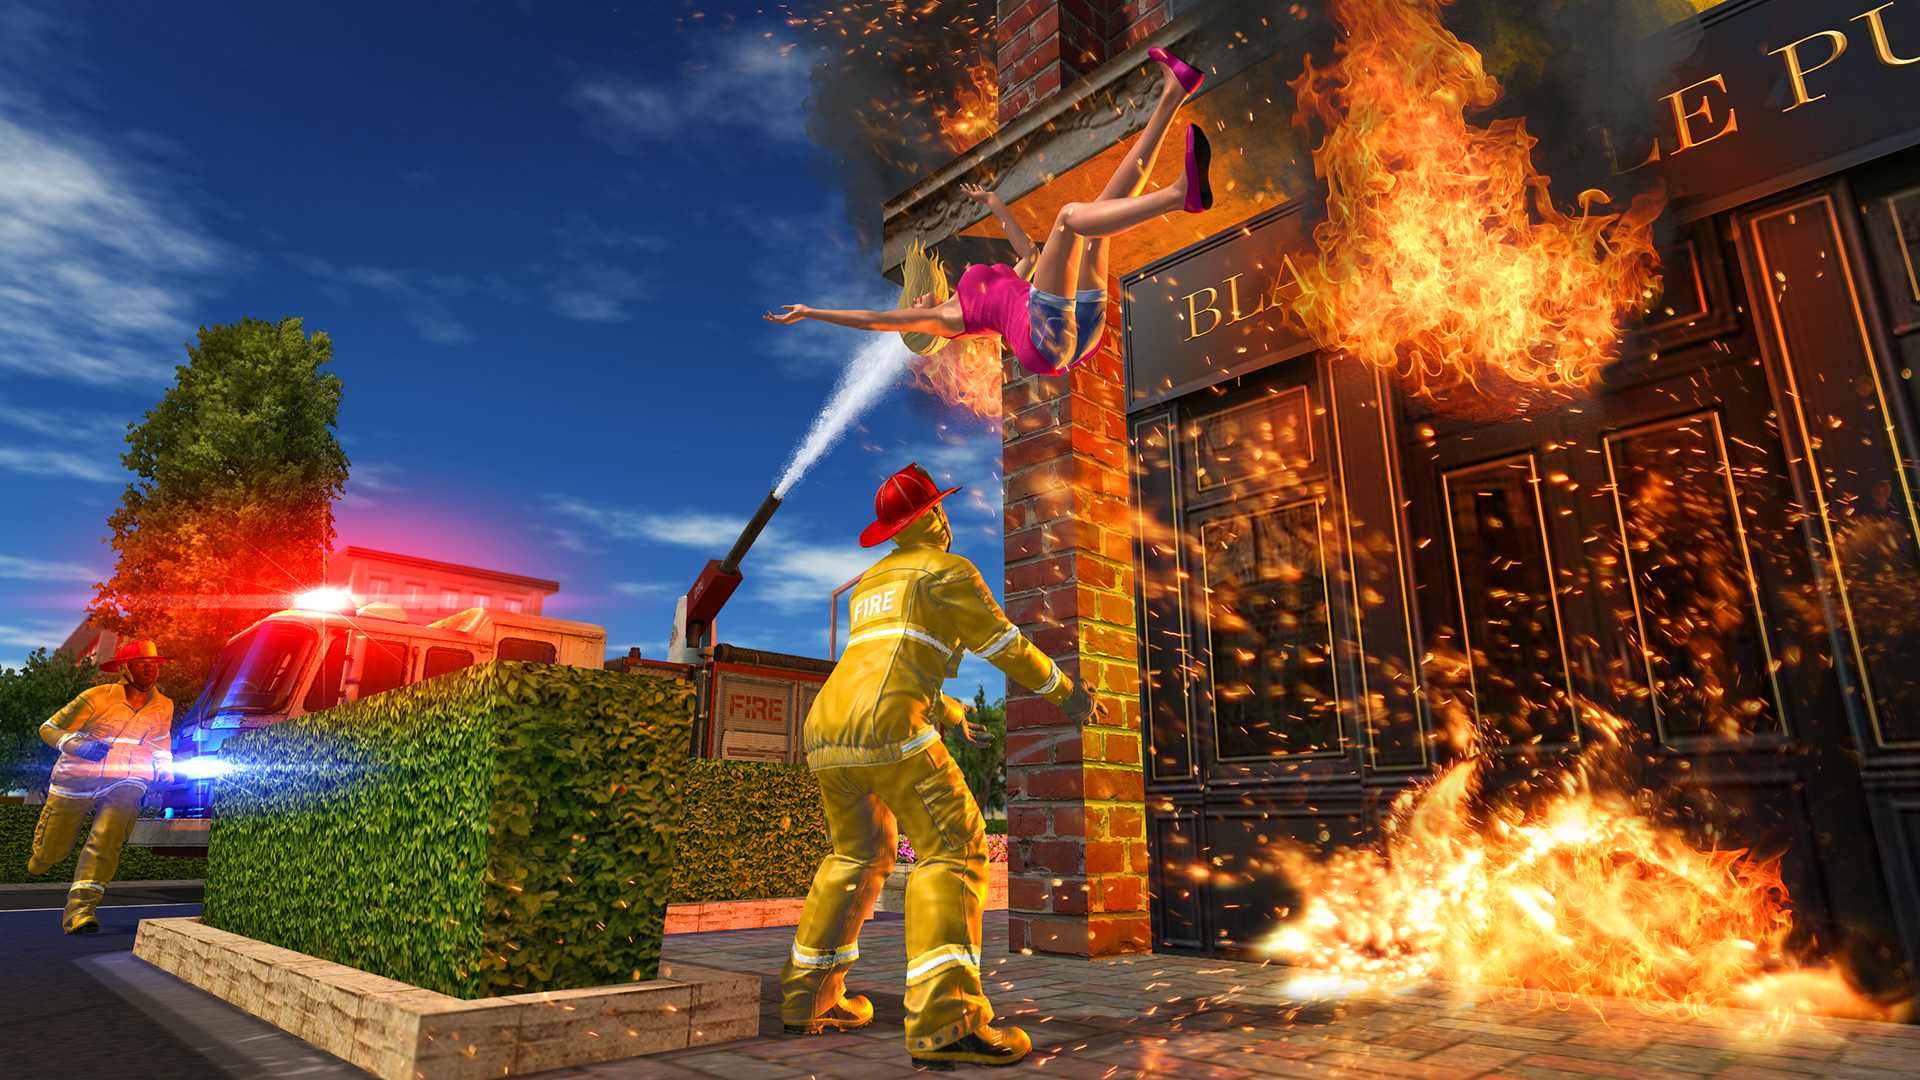 Screenshot 1 of Feuerwehrauto-Spiel 1.1.0